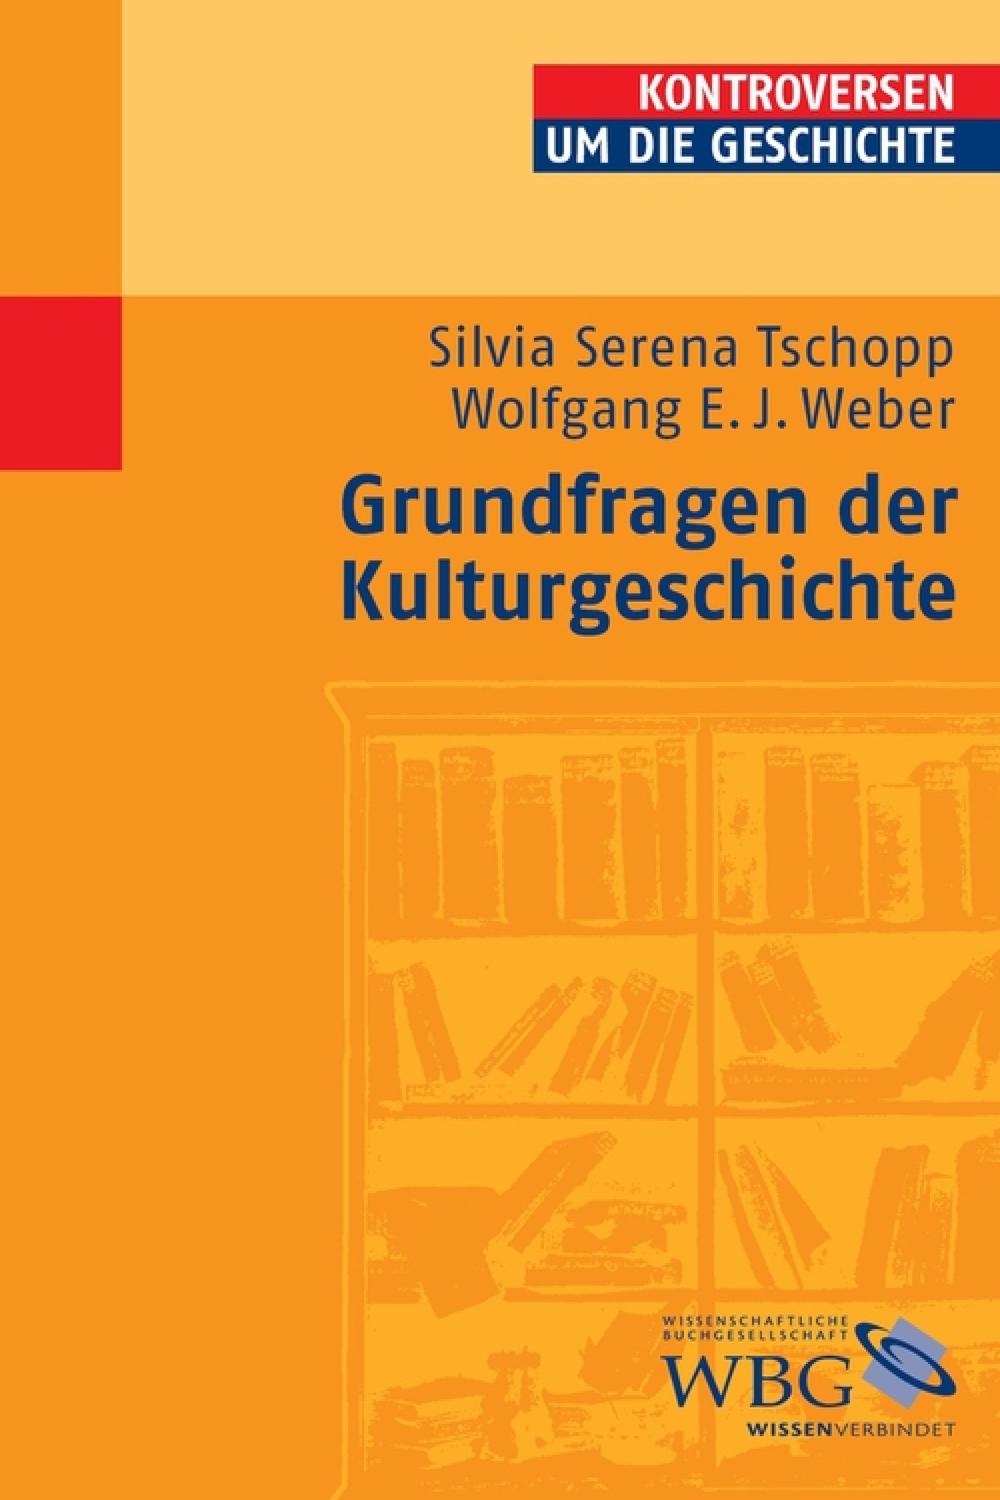 Grundfragen der Kulturgeschichte - Silvia Serena Tschopp, Wolfgang E. J. Weber